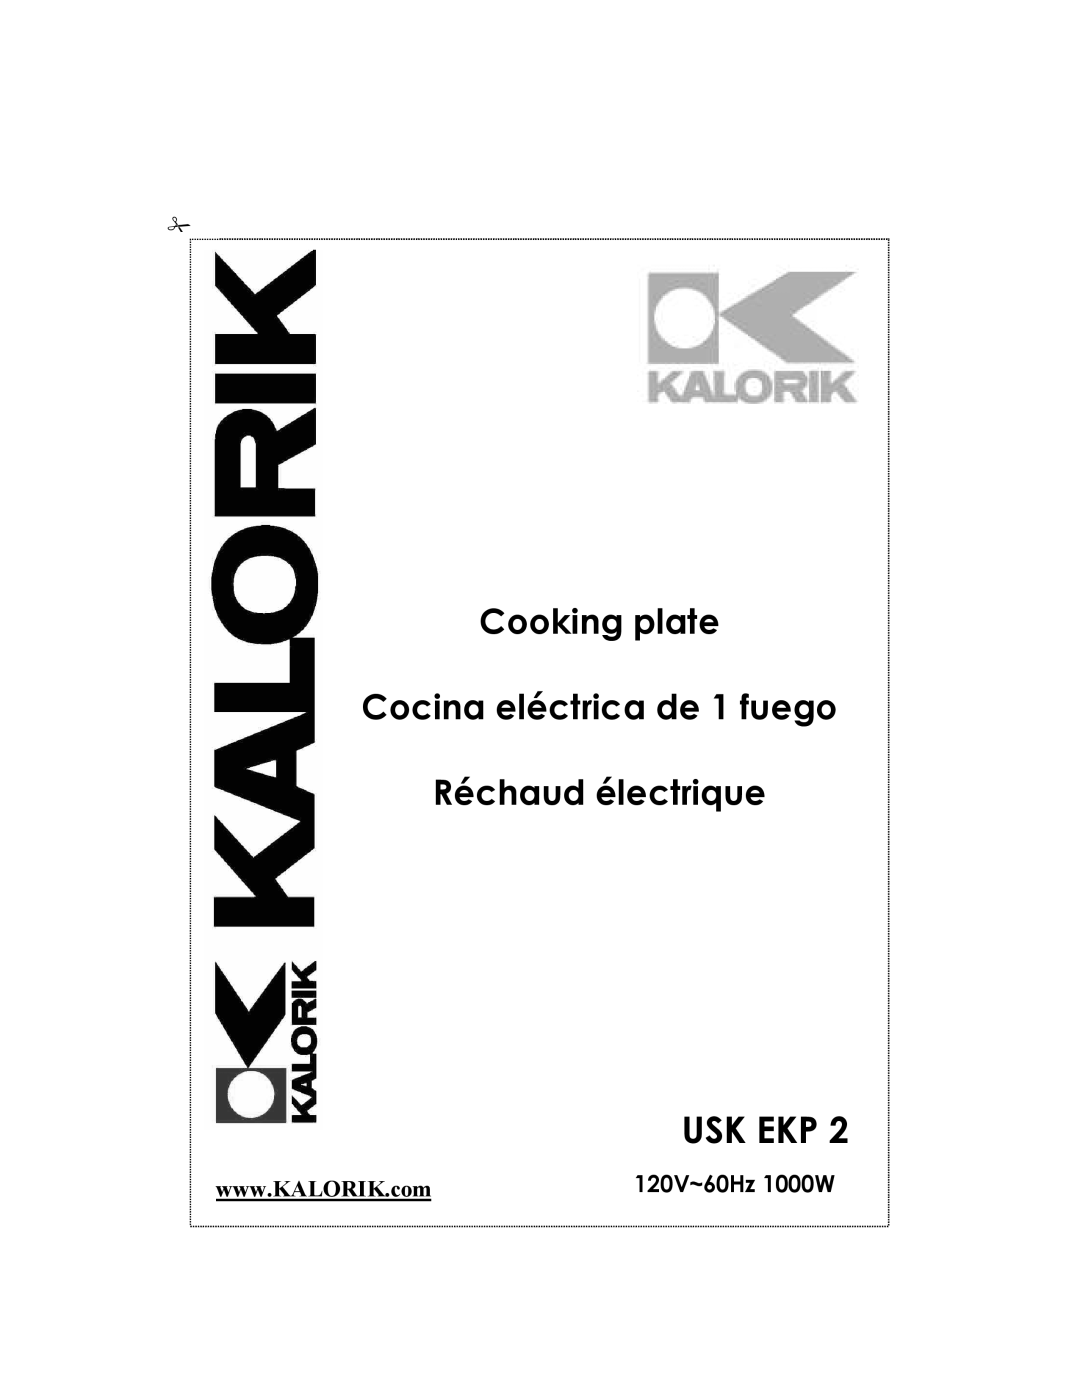 Kalorik 80204 manual Usk Ekp, Cooking plate Cocina eléctrica de 1 fuego, Réchaud électrique, 120V~60Hz 1000W 